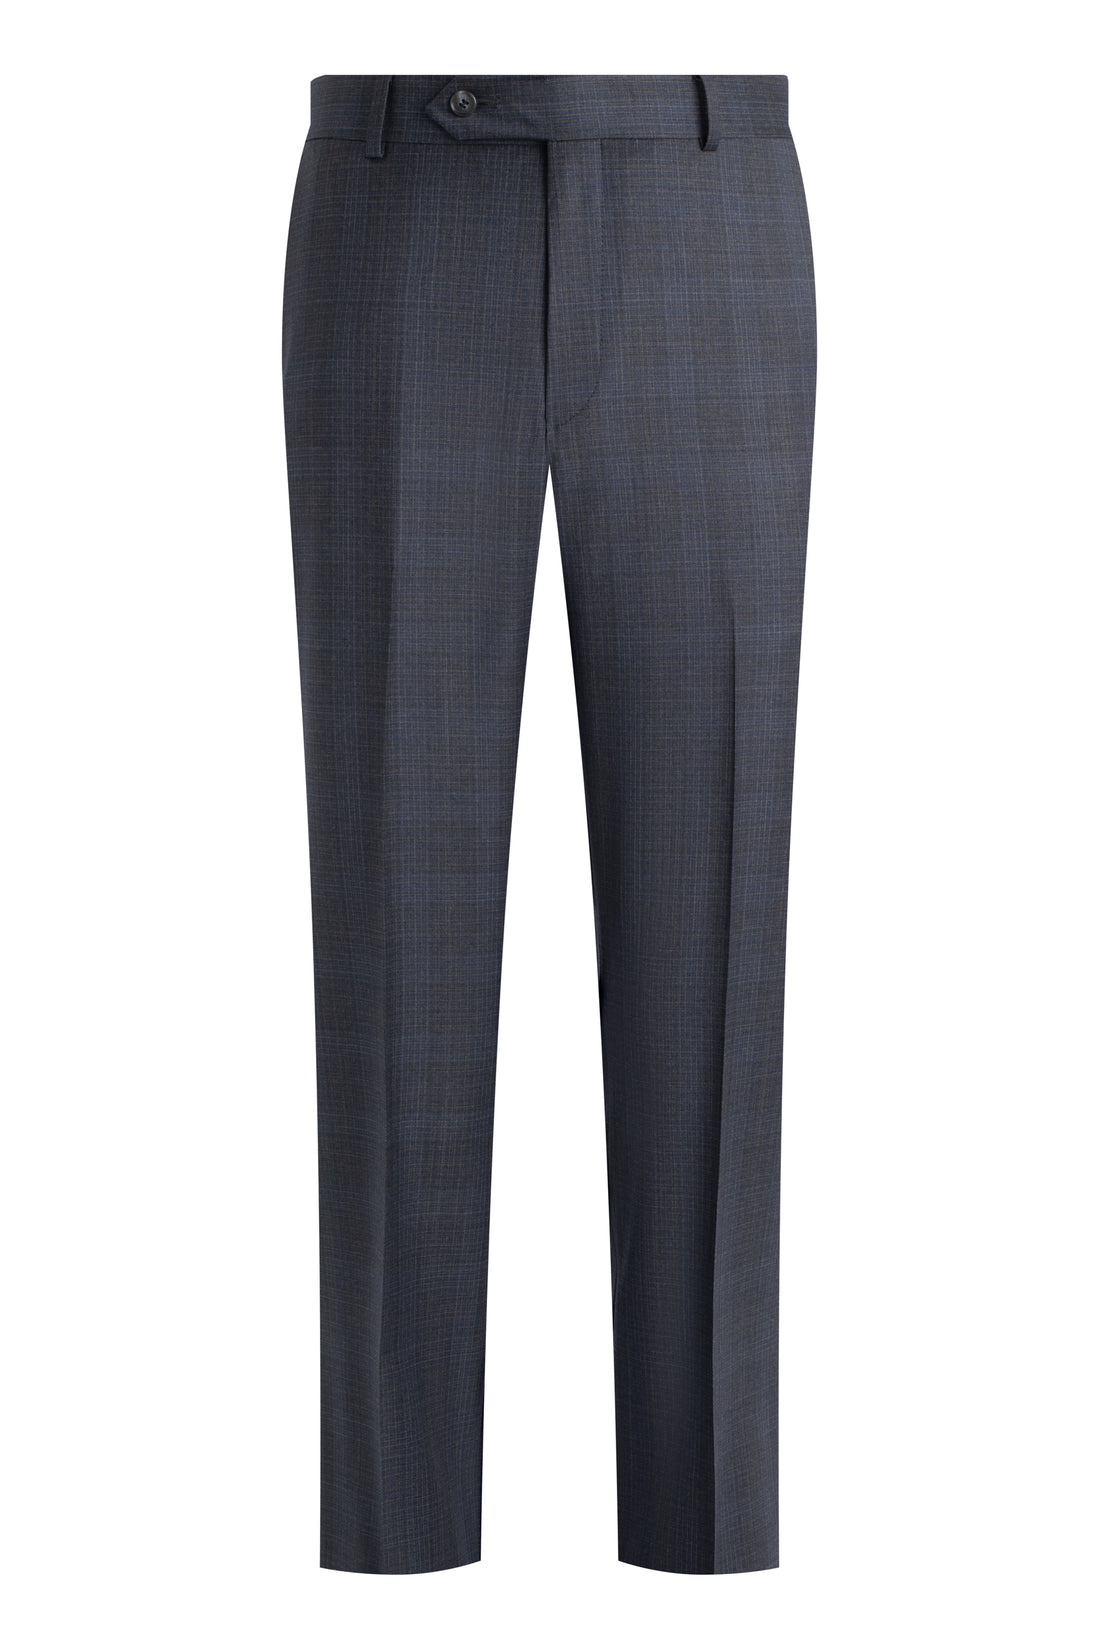 Charcoal-Blue Graph Check Suit front pant